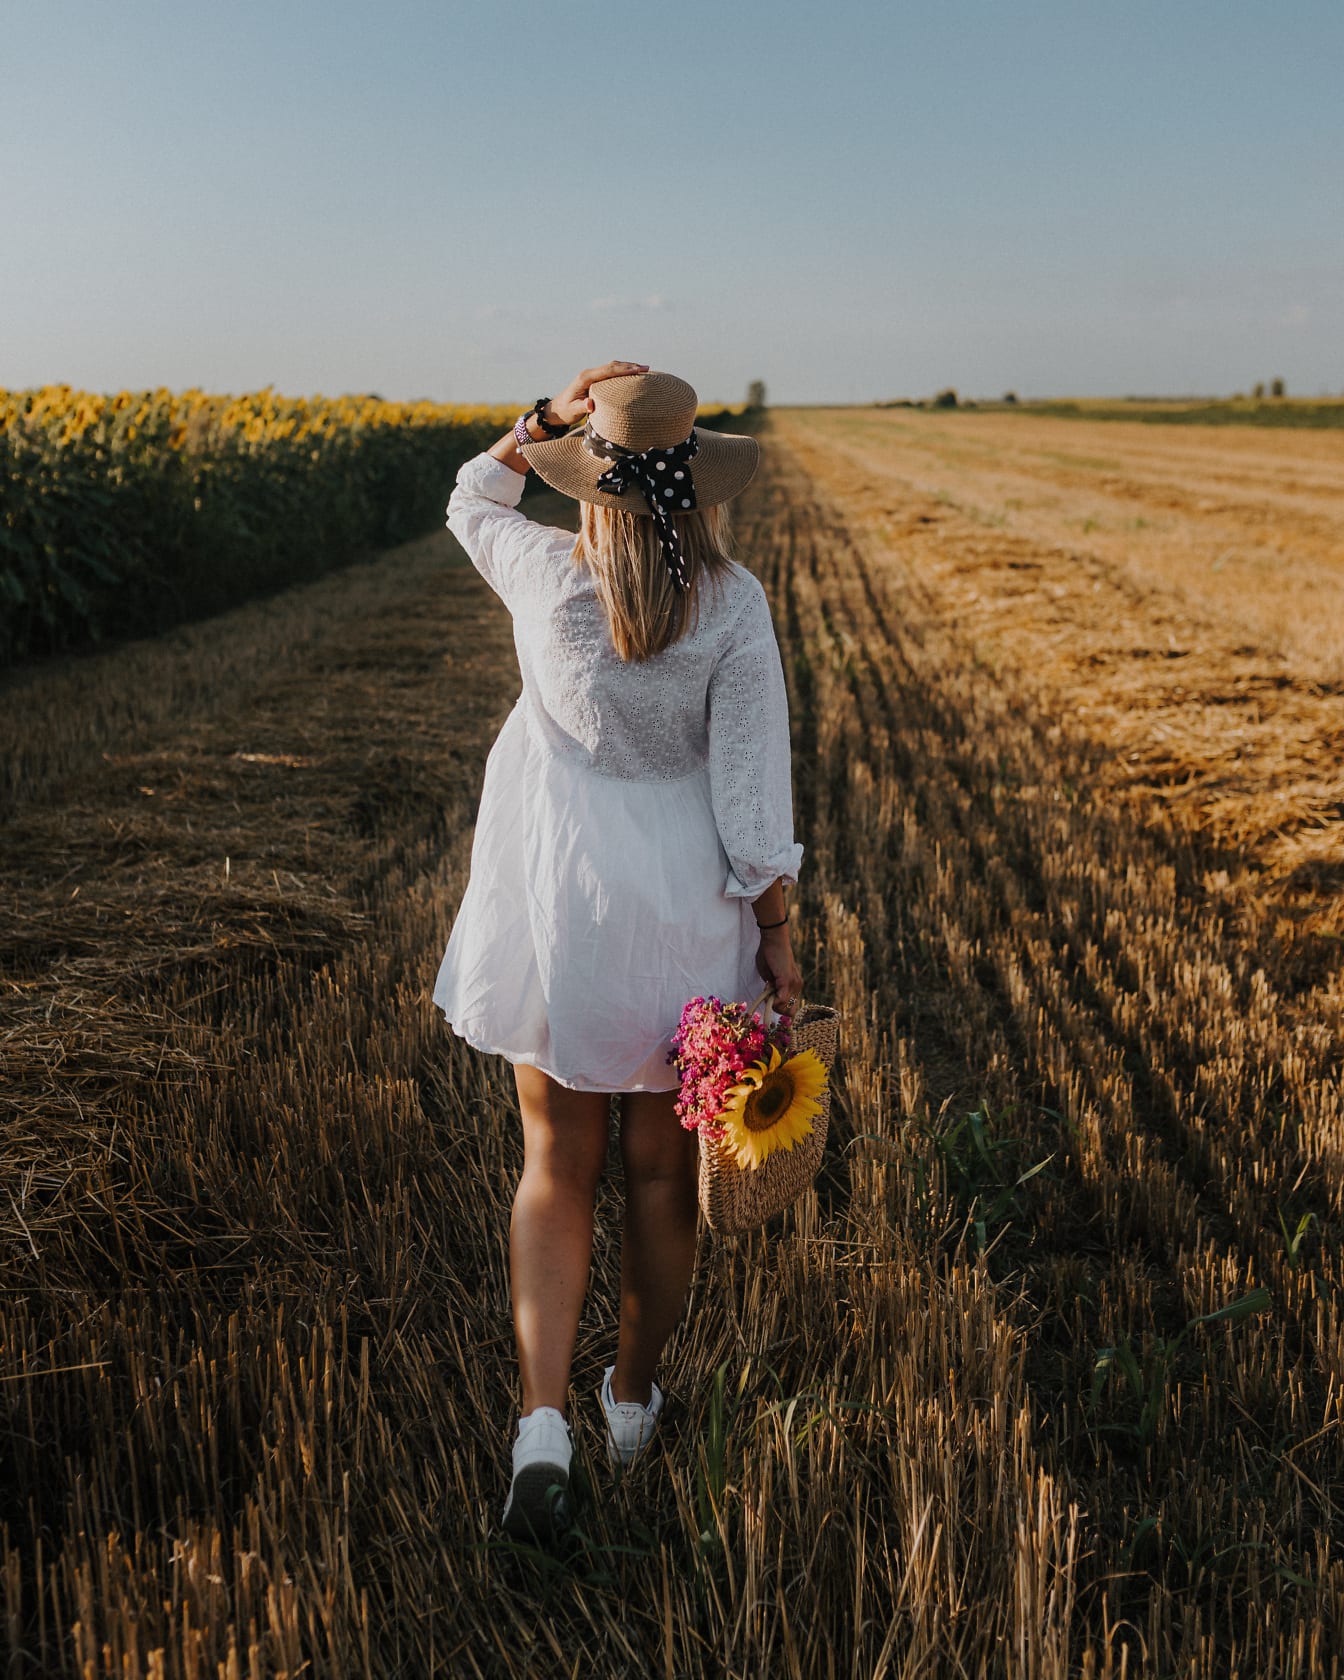 Mladá žena kráčajúca po pšeničnom poli v bielych šatách a slamenom klobúku